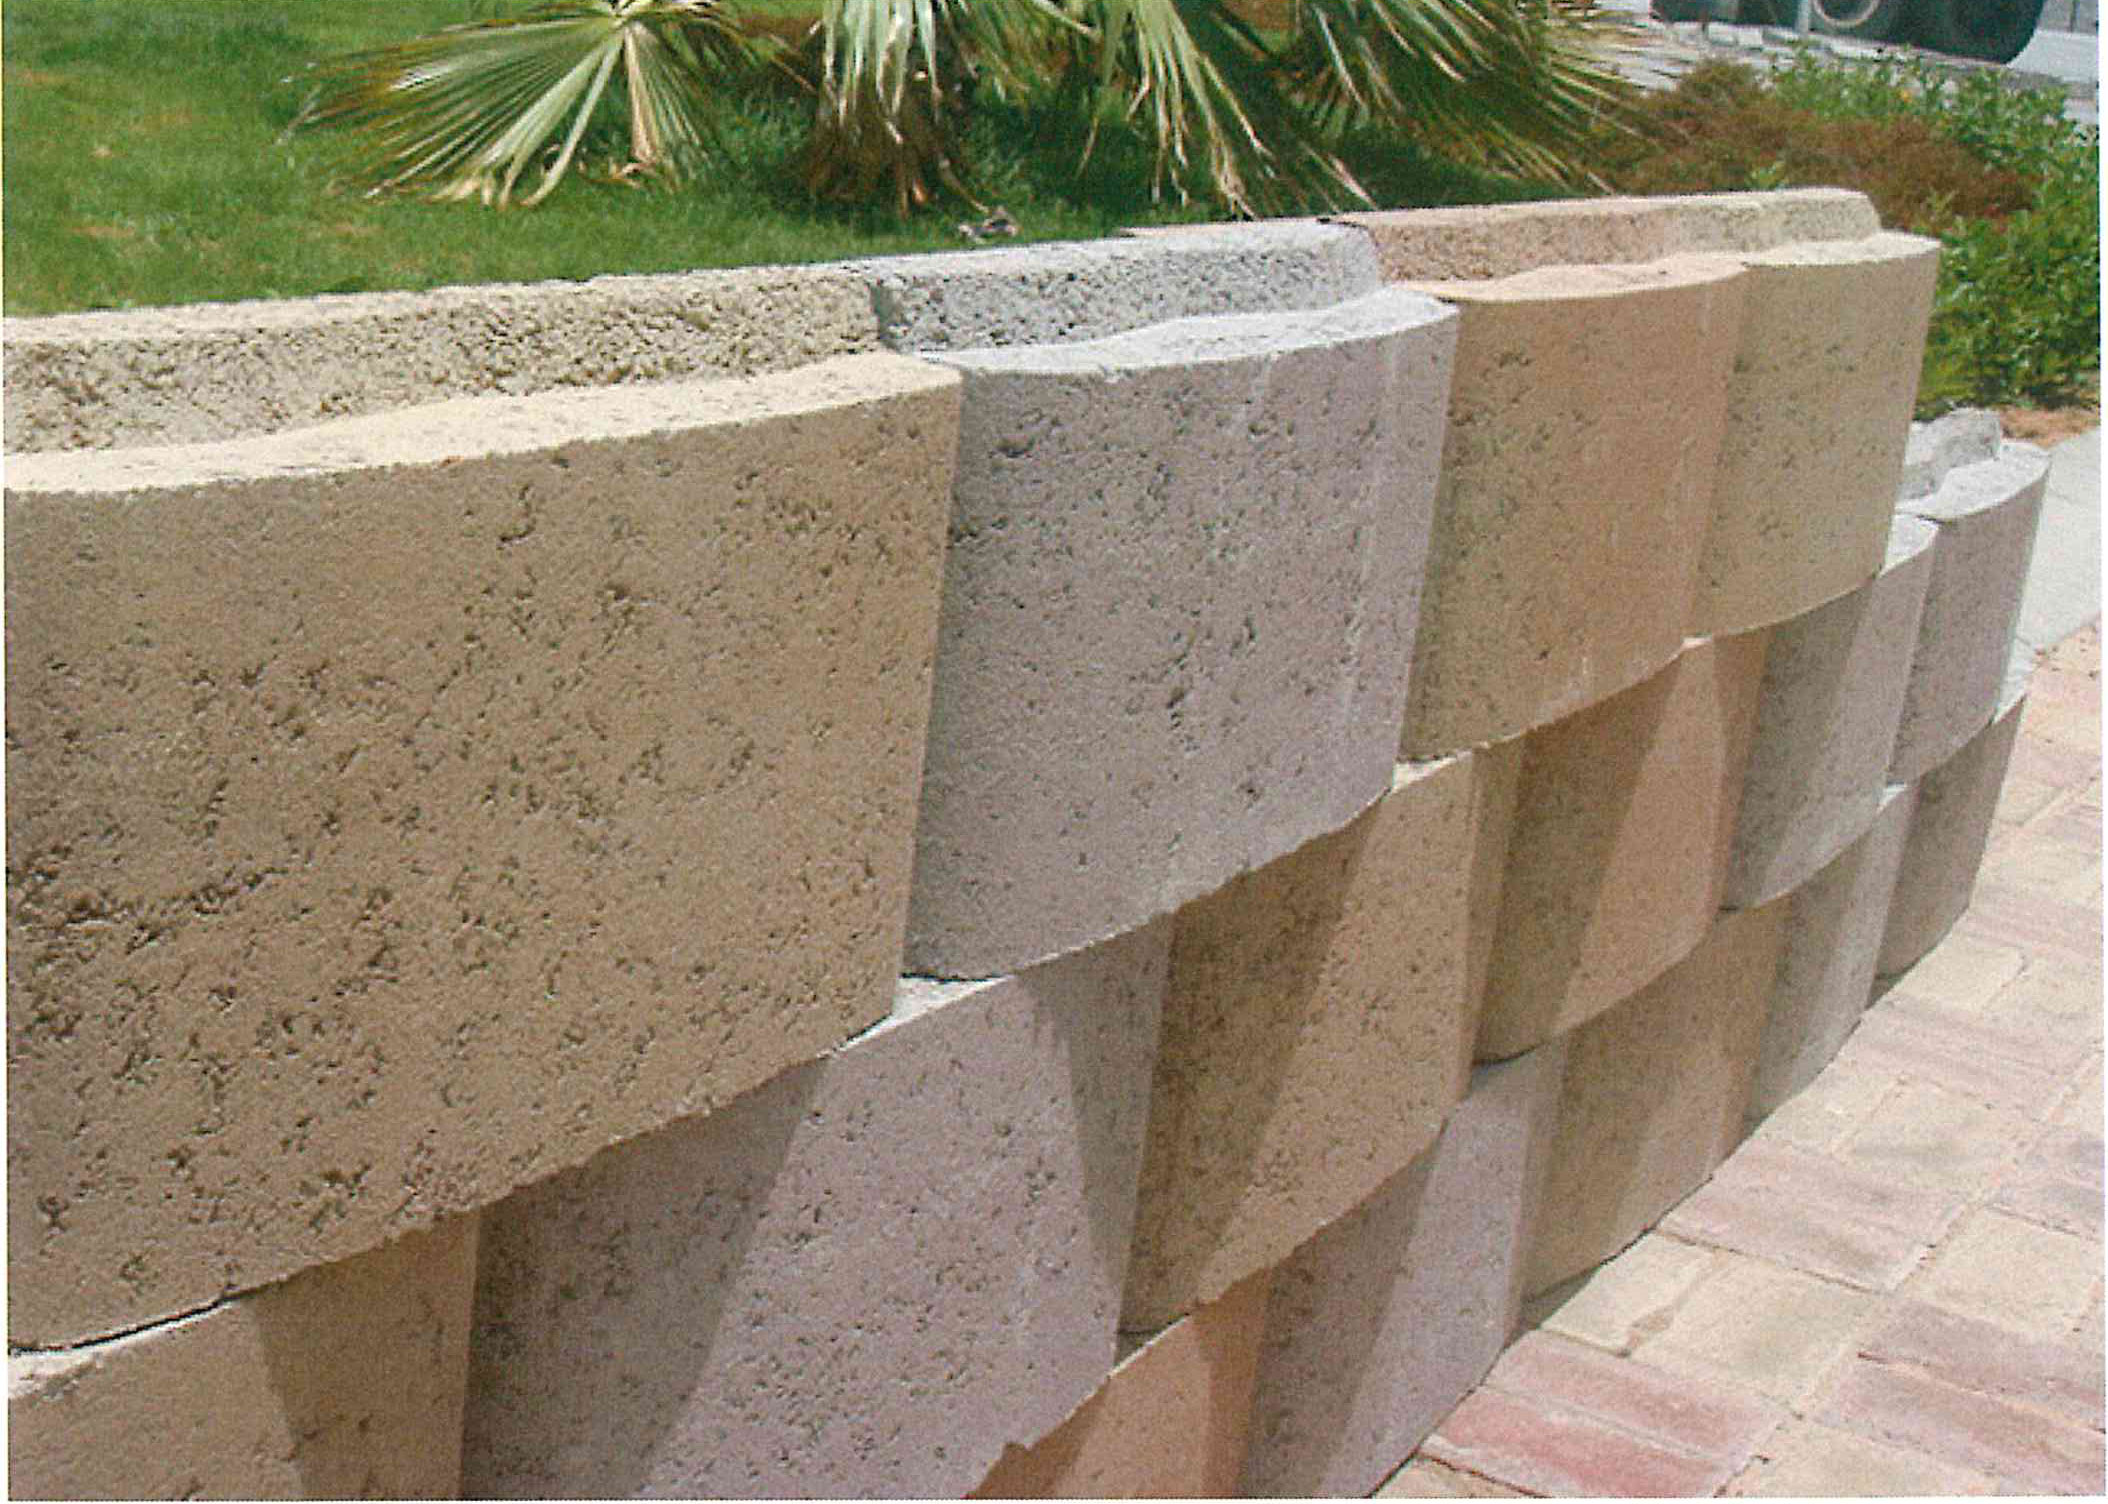 Tensar Modular concrete blocks manufacture in Dubai, UAE - EMCON